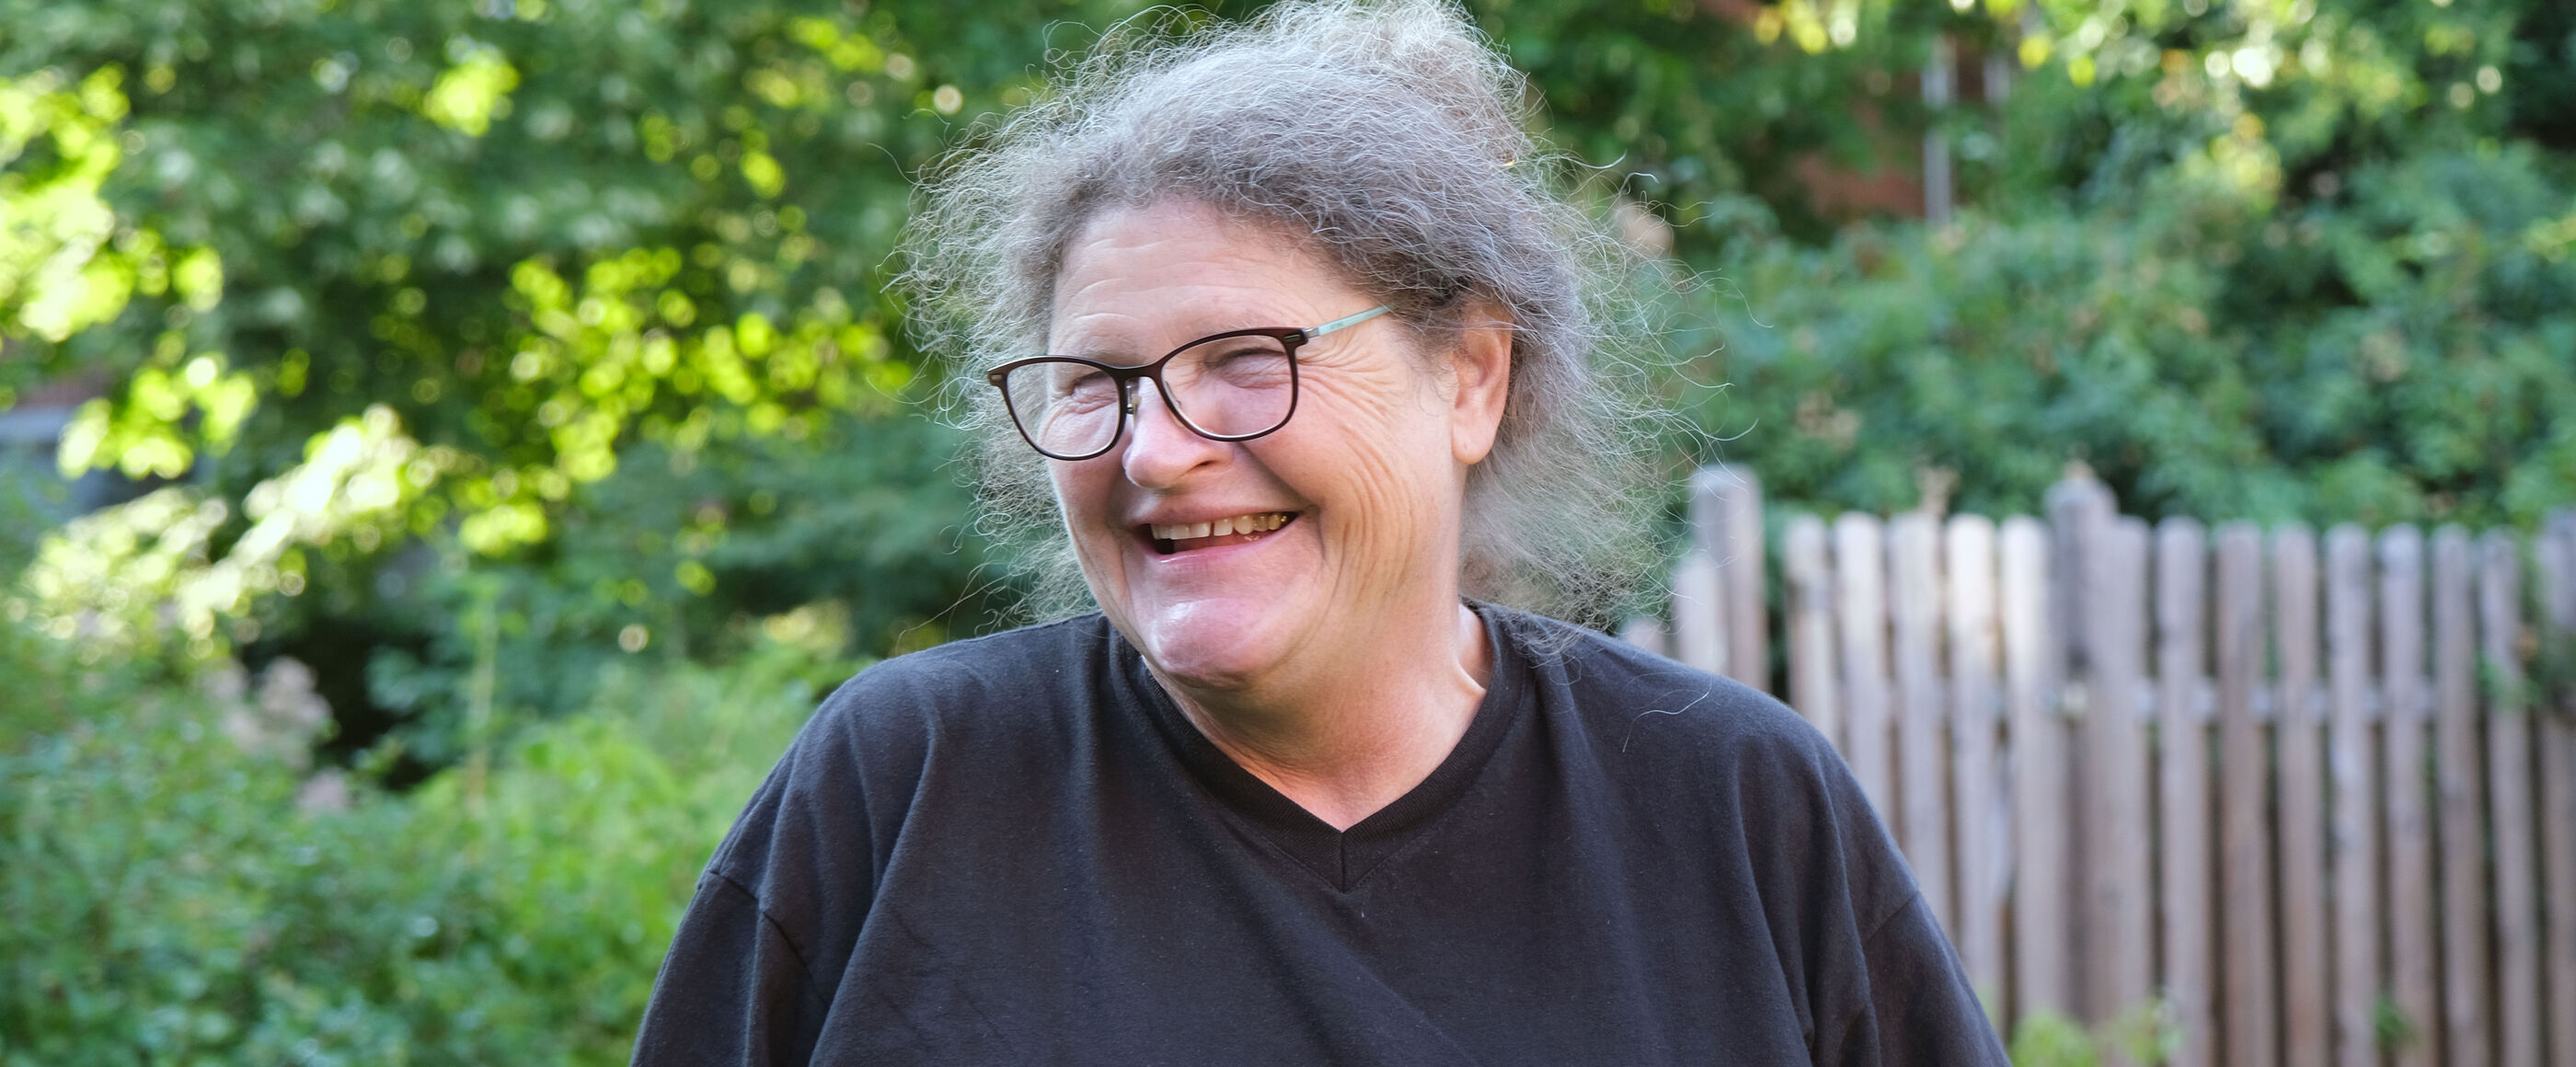 Eine Frau mit grauen Haaren, Brille und dunklem Shirt lacht, den Kopf nach rechts gedreht. Sie steht vor grünen Hecken und einem Holzzaun.